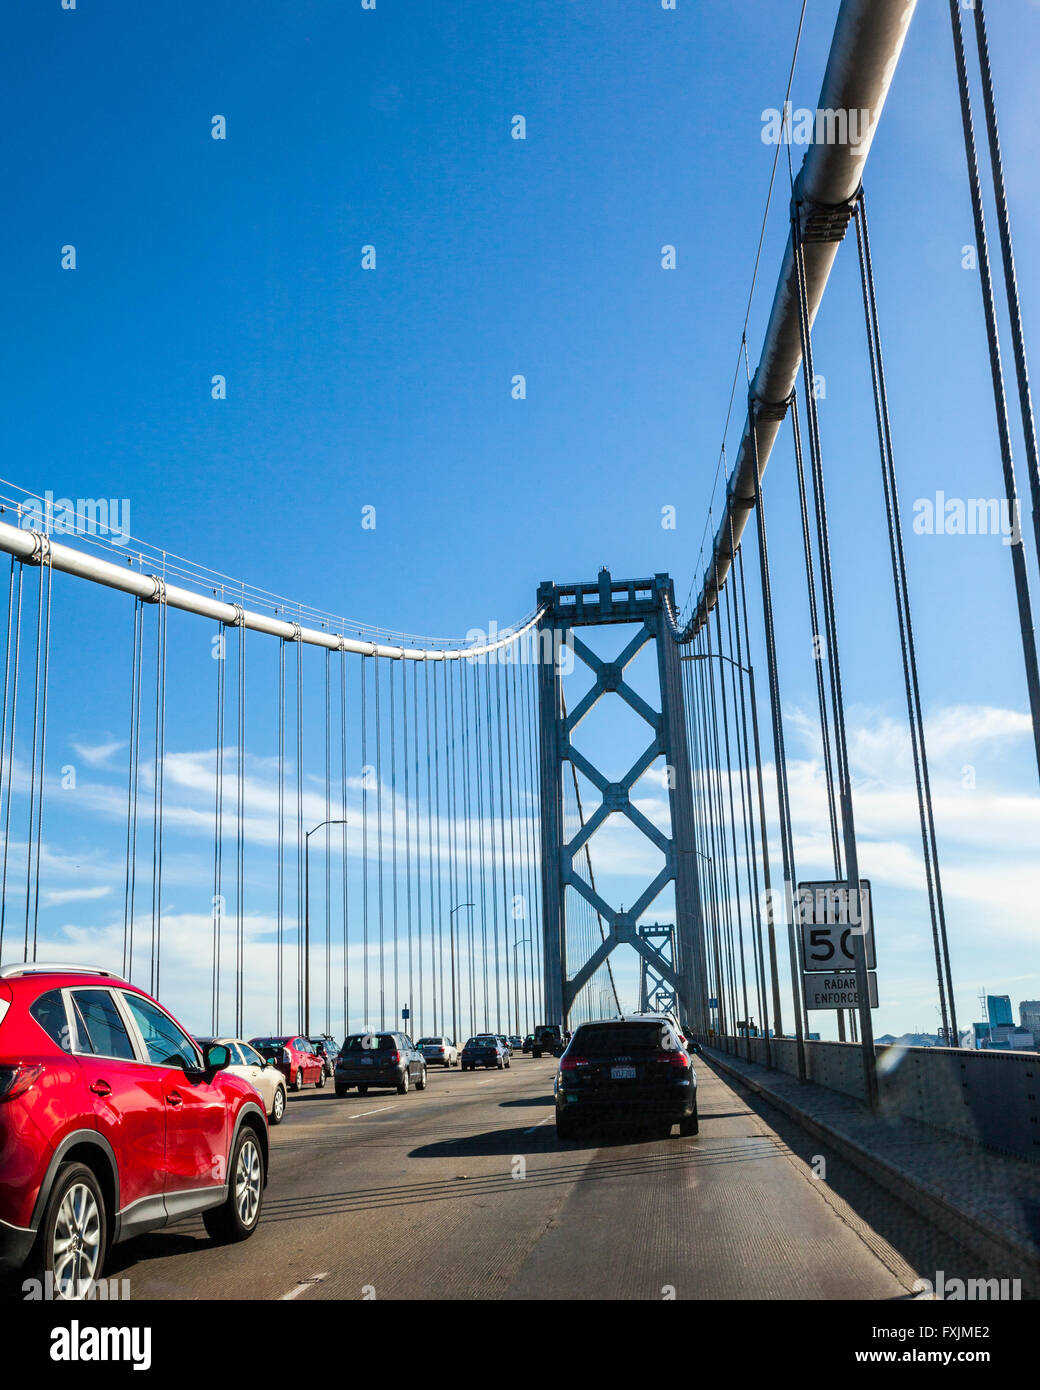 Belle vue depuis le San Francisco Oakland Bay Bridge sur une terrasse bien au chaud samedi d'avril 2016 Banque D'Images